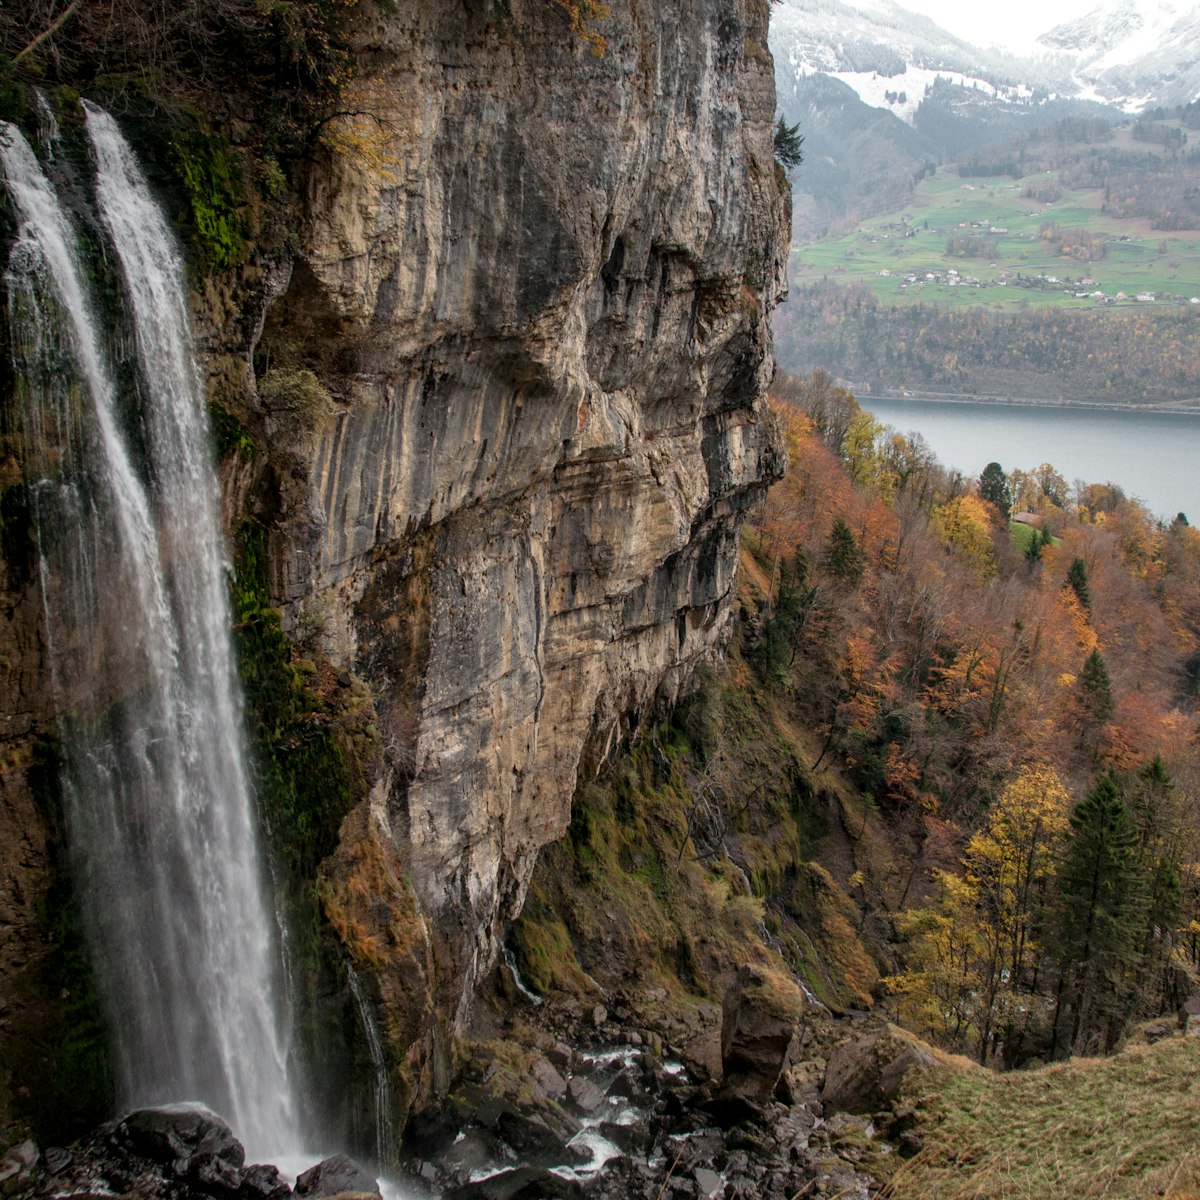 Seerenbachfälle, waterfall in Switzerland.